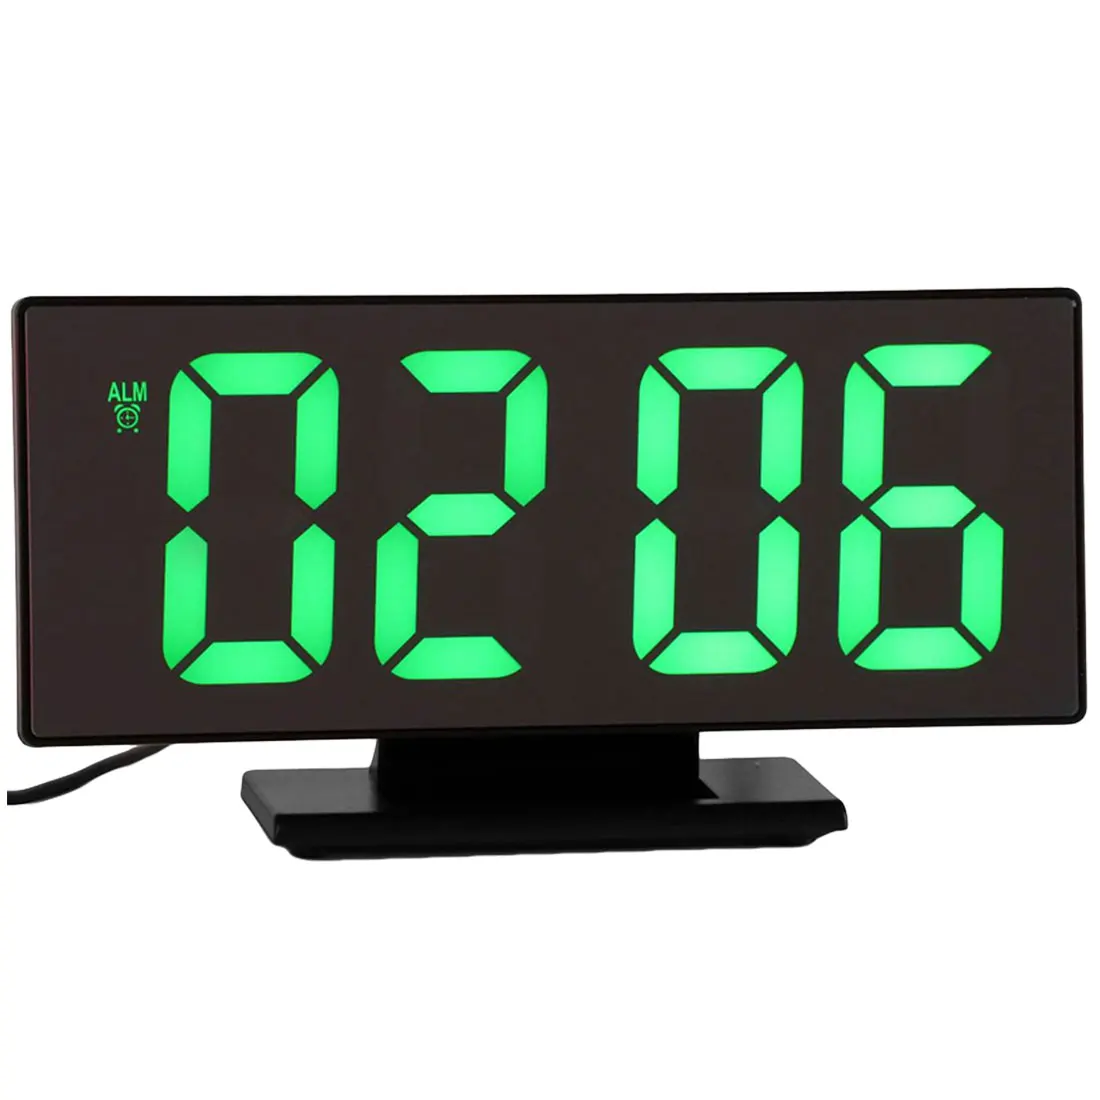 Многофункциональный светодиодный зеркальные часы цифровой будильник Повтор дисплей время ночного стола рабочего стола офиса дома спальни украшения - Цвет: B Shell and G Words